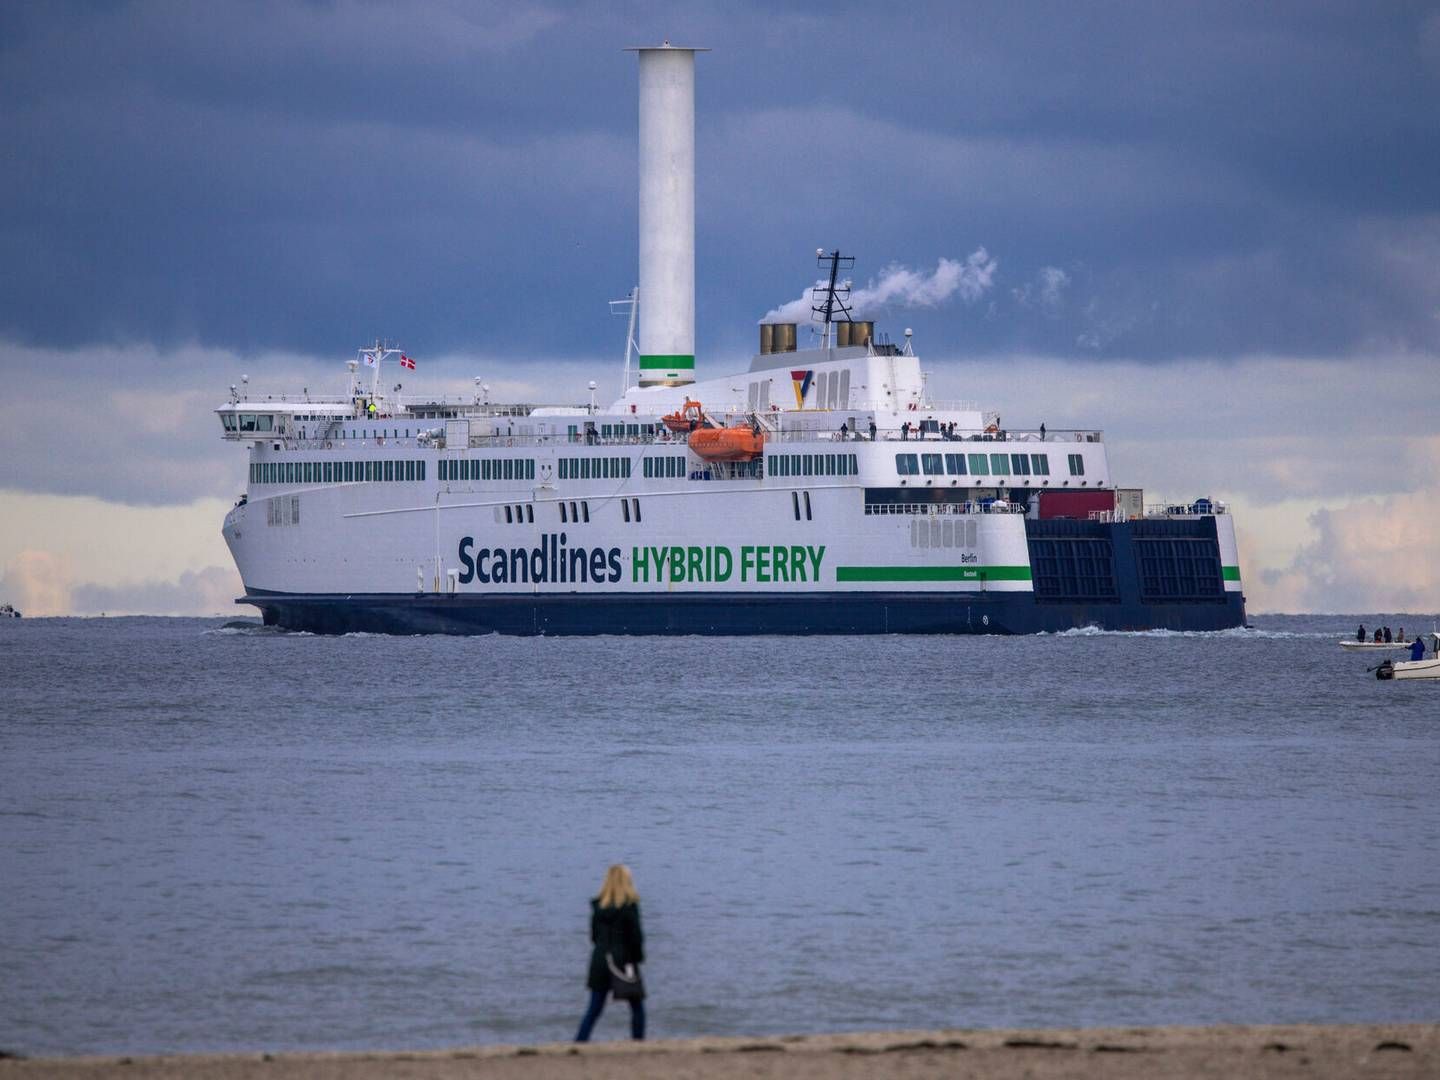 Skiftet på færgerederiets post som fragtchef sker, efter den tidligere fragtchef går på pension. | Foto: Jens B'ttner/AP/Ritzau Scanpix